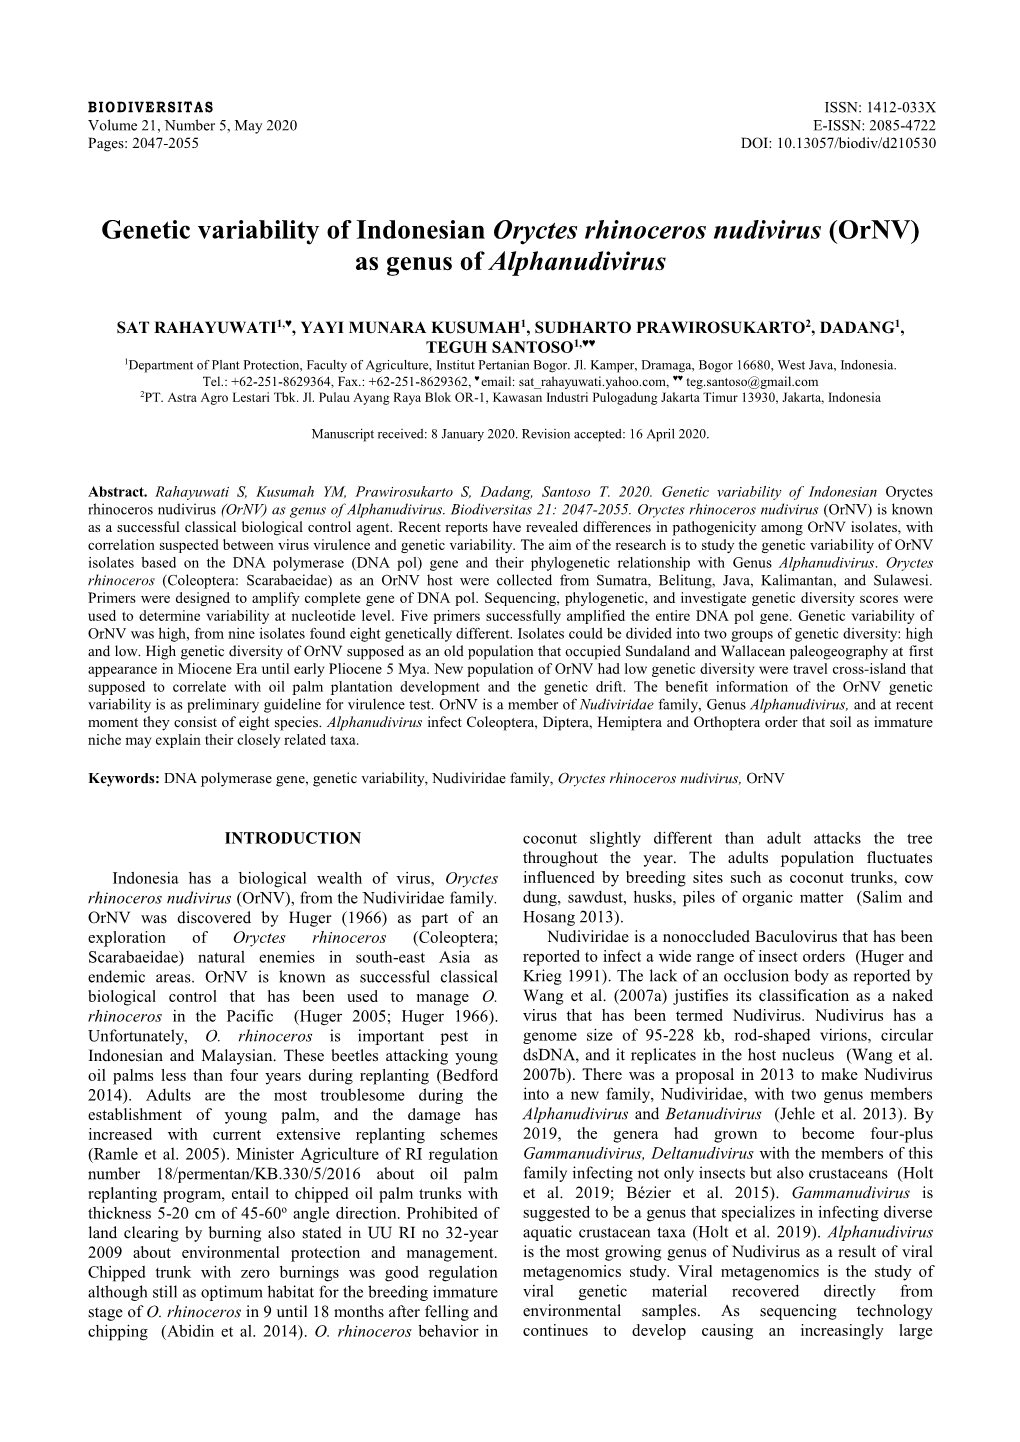 Genetic Variability of Indonesian Oryctes Rhinoceros Nudivirus (Ornv) As Genus of Alphanudivirus